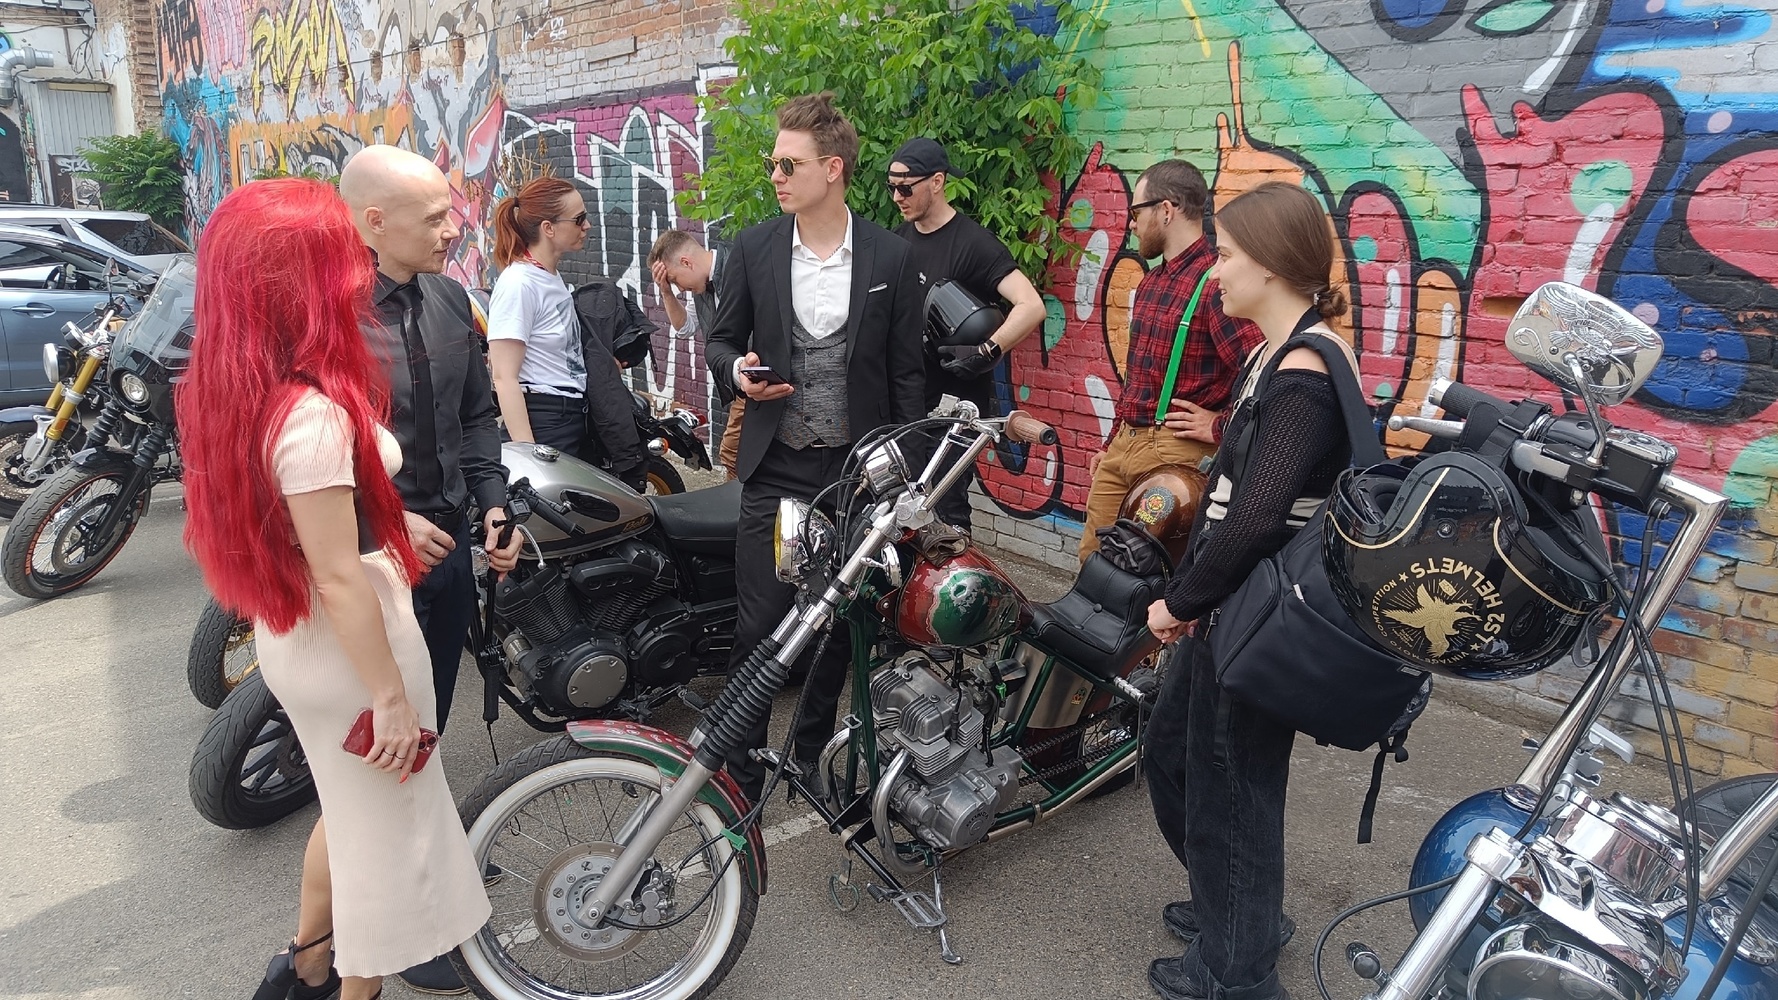 Джентльмены и леди: в Краснодаре состоялся очередной мотопробег Gentleman’s ride